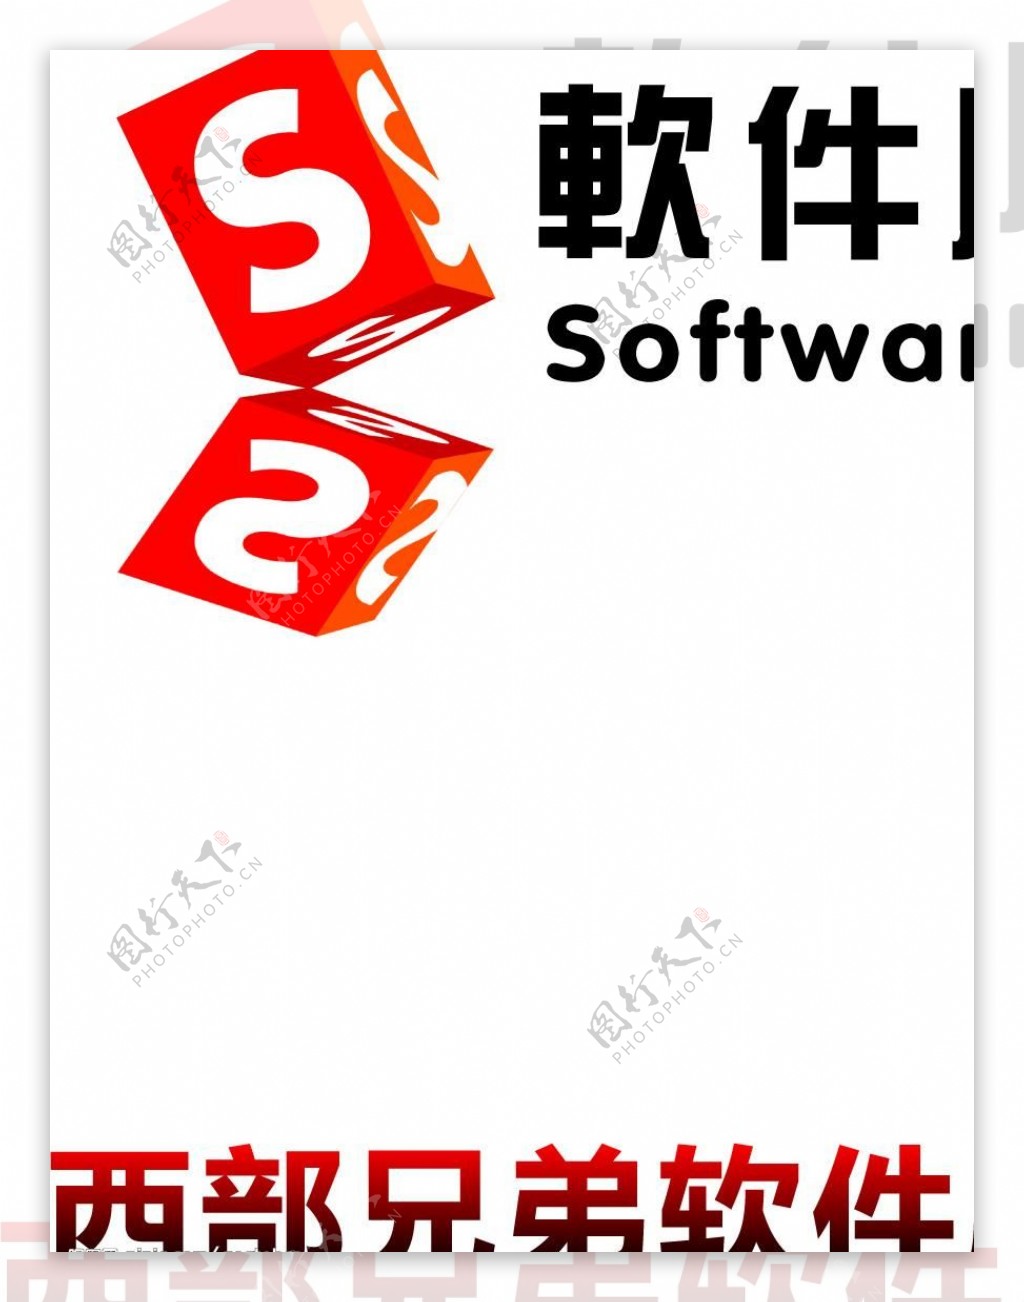 西部兄弟软件logo图片